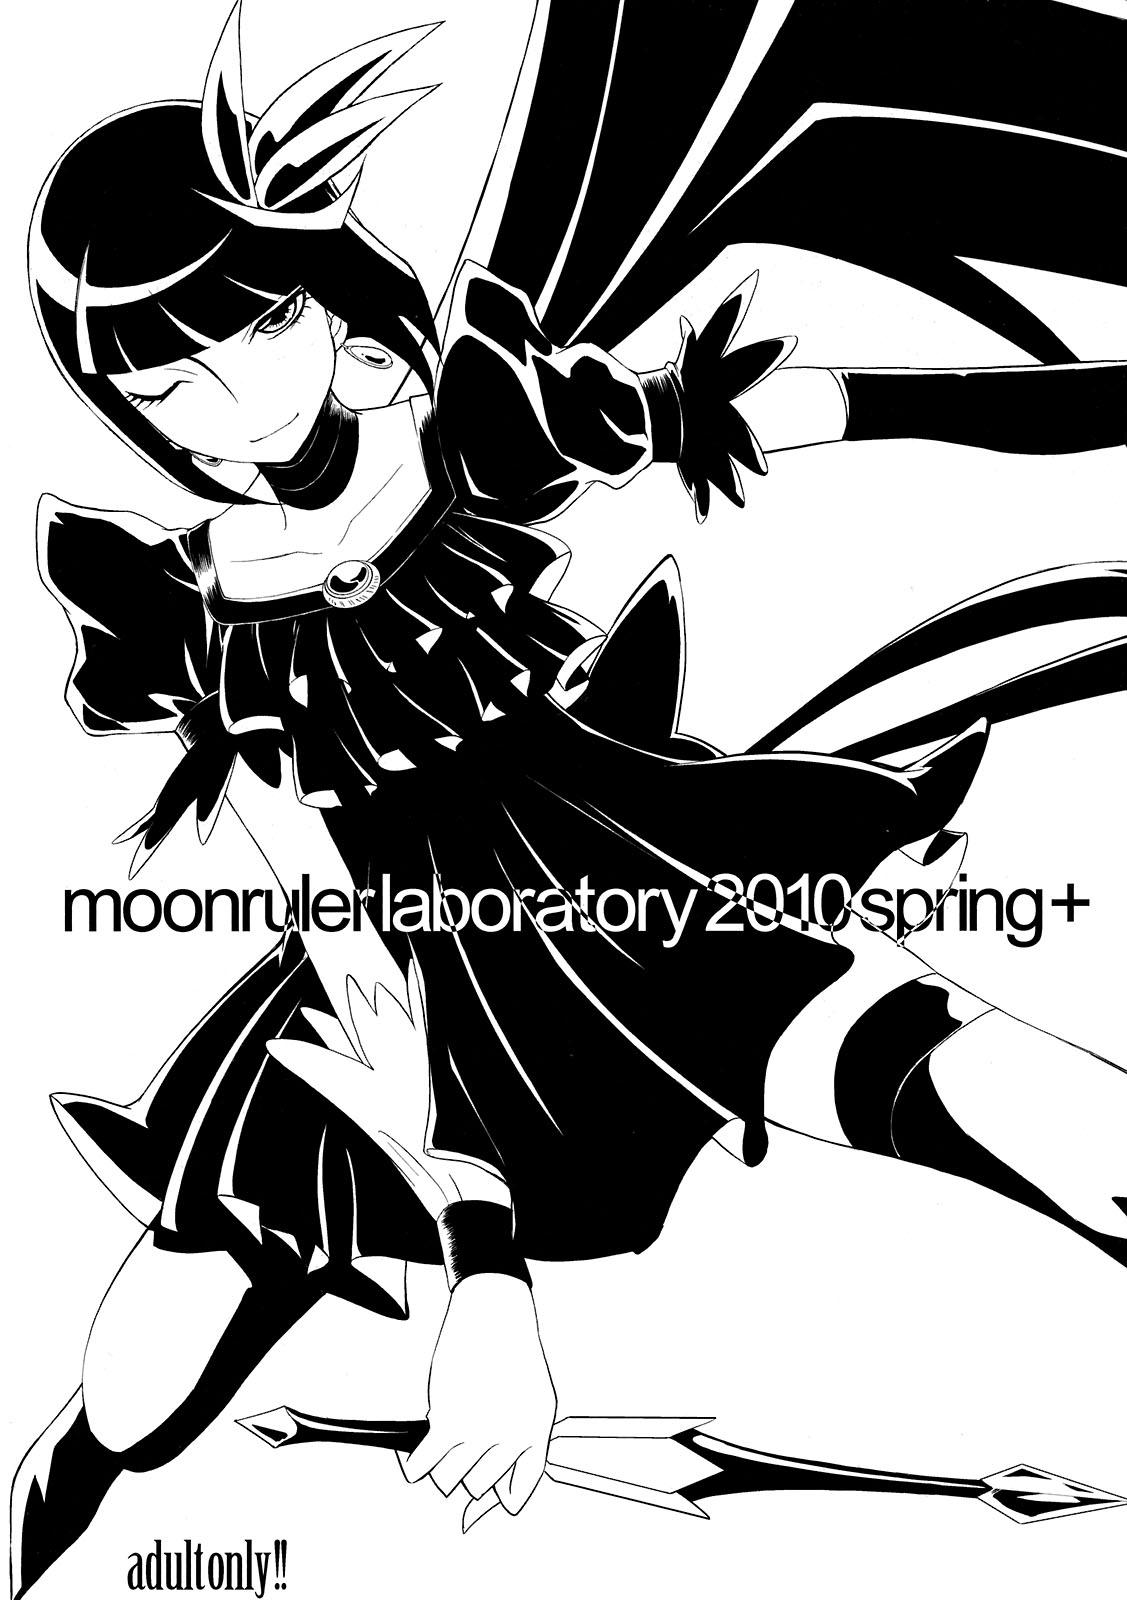 moonrulerlaboratory 2010 spring+ 0